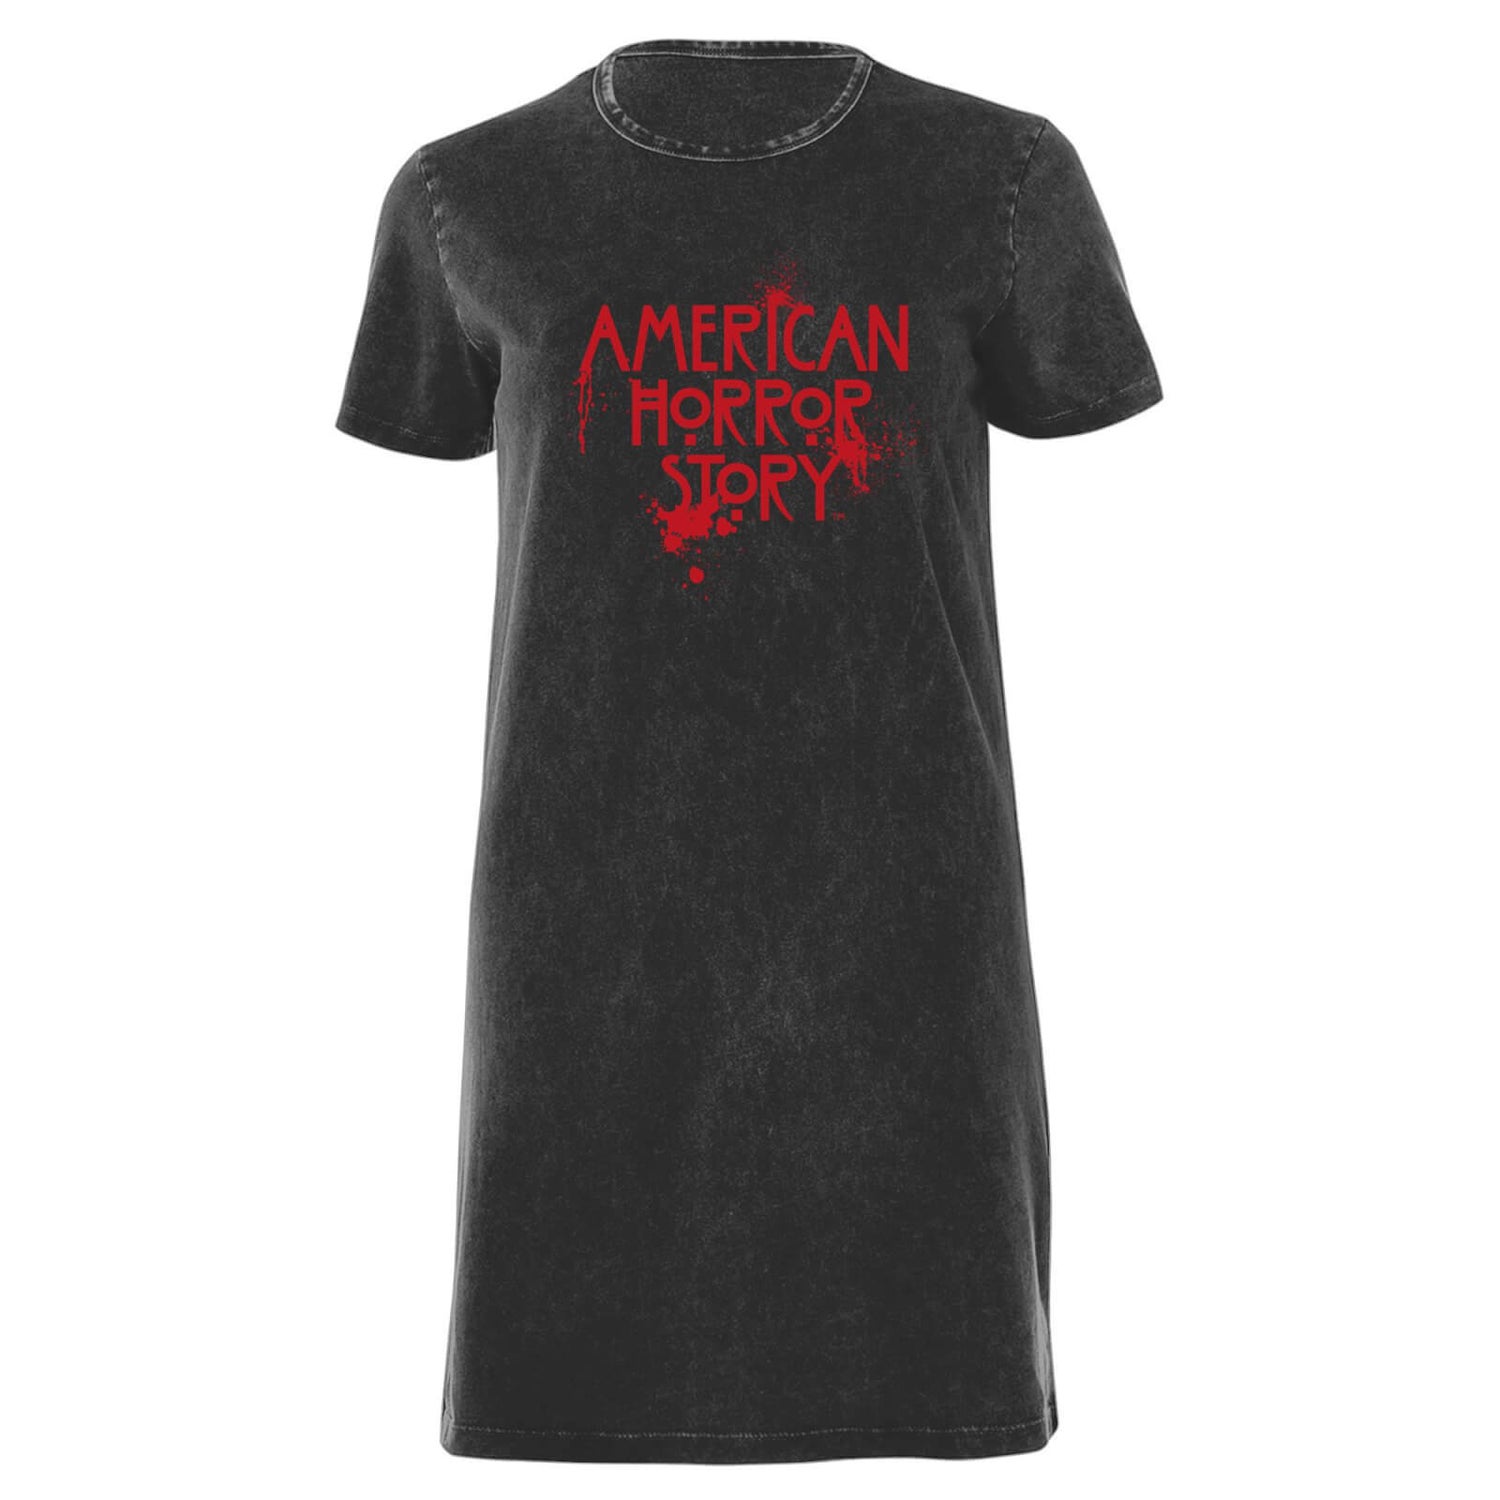 American Horror Story Splatter Logo Women's T-Shirt Dress - Black Acid Wash